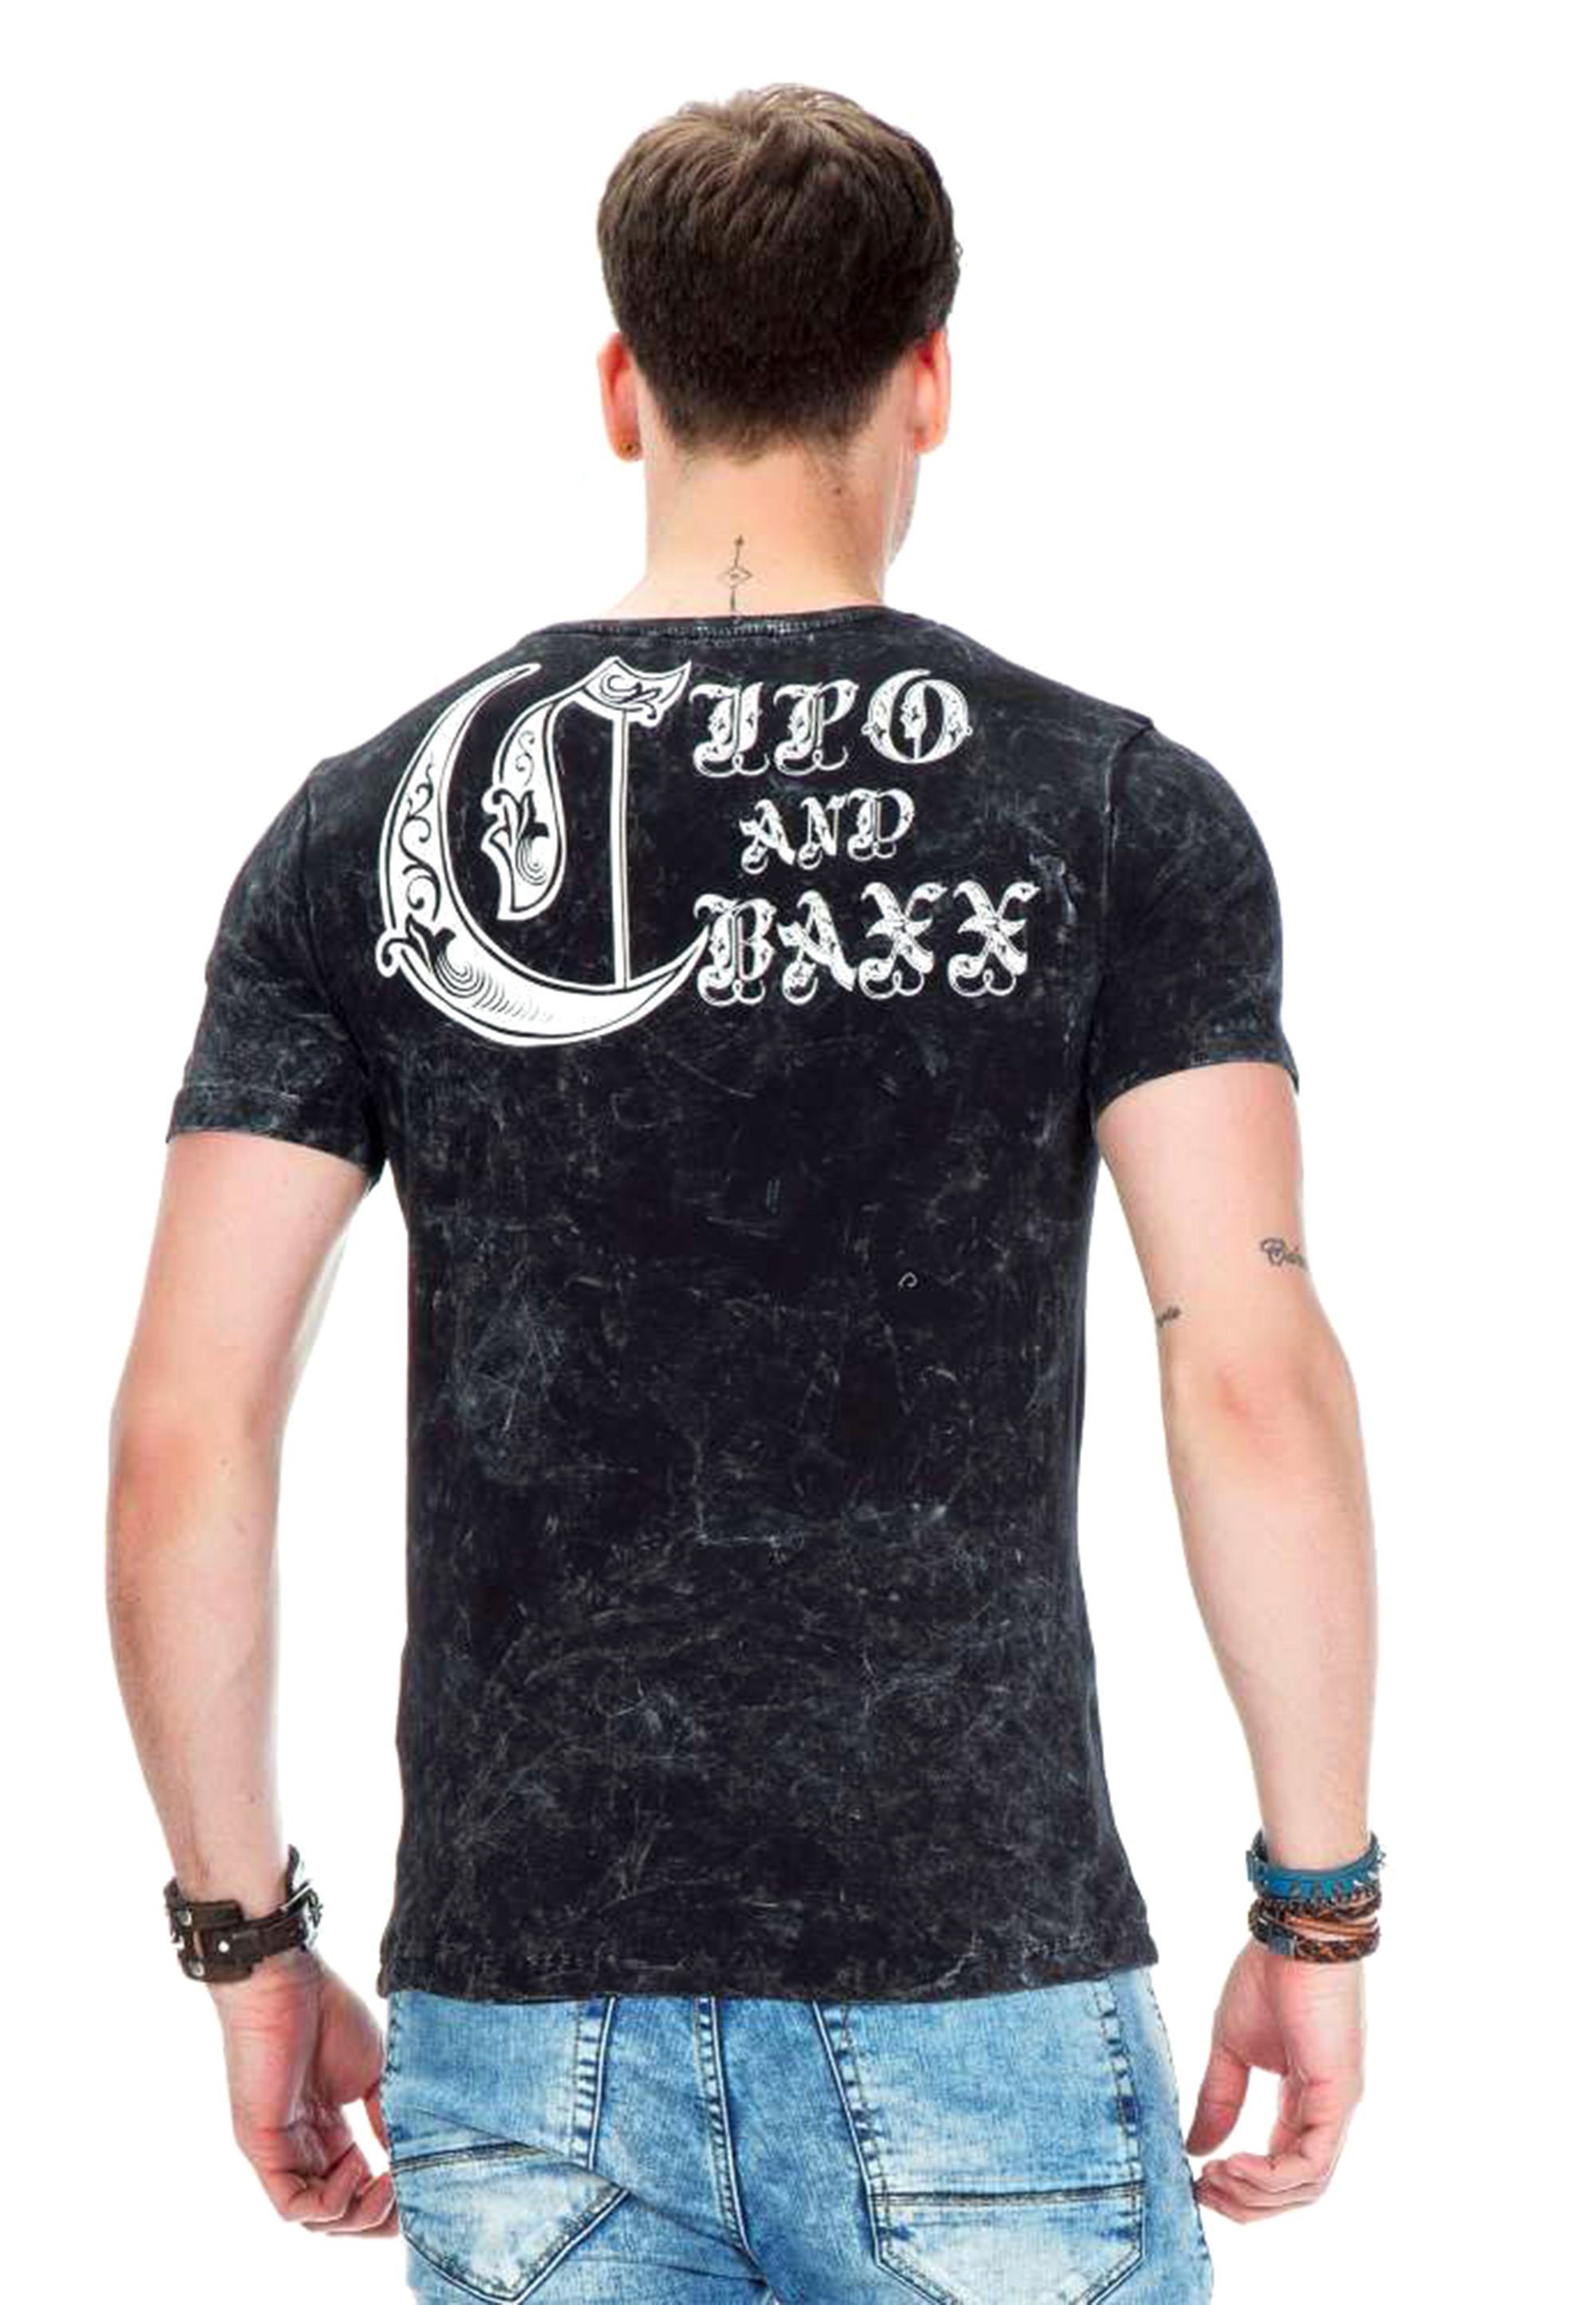 Cipo & Baxx T-Shirt Printmotiven mit stylischen